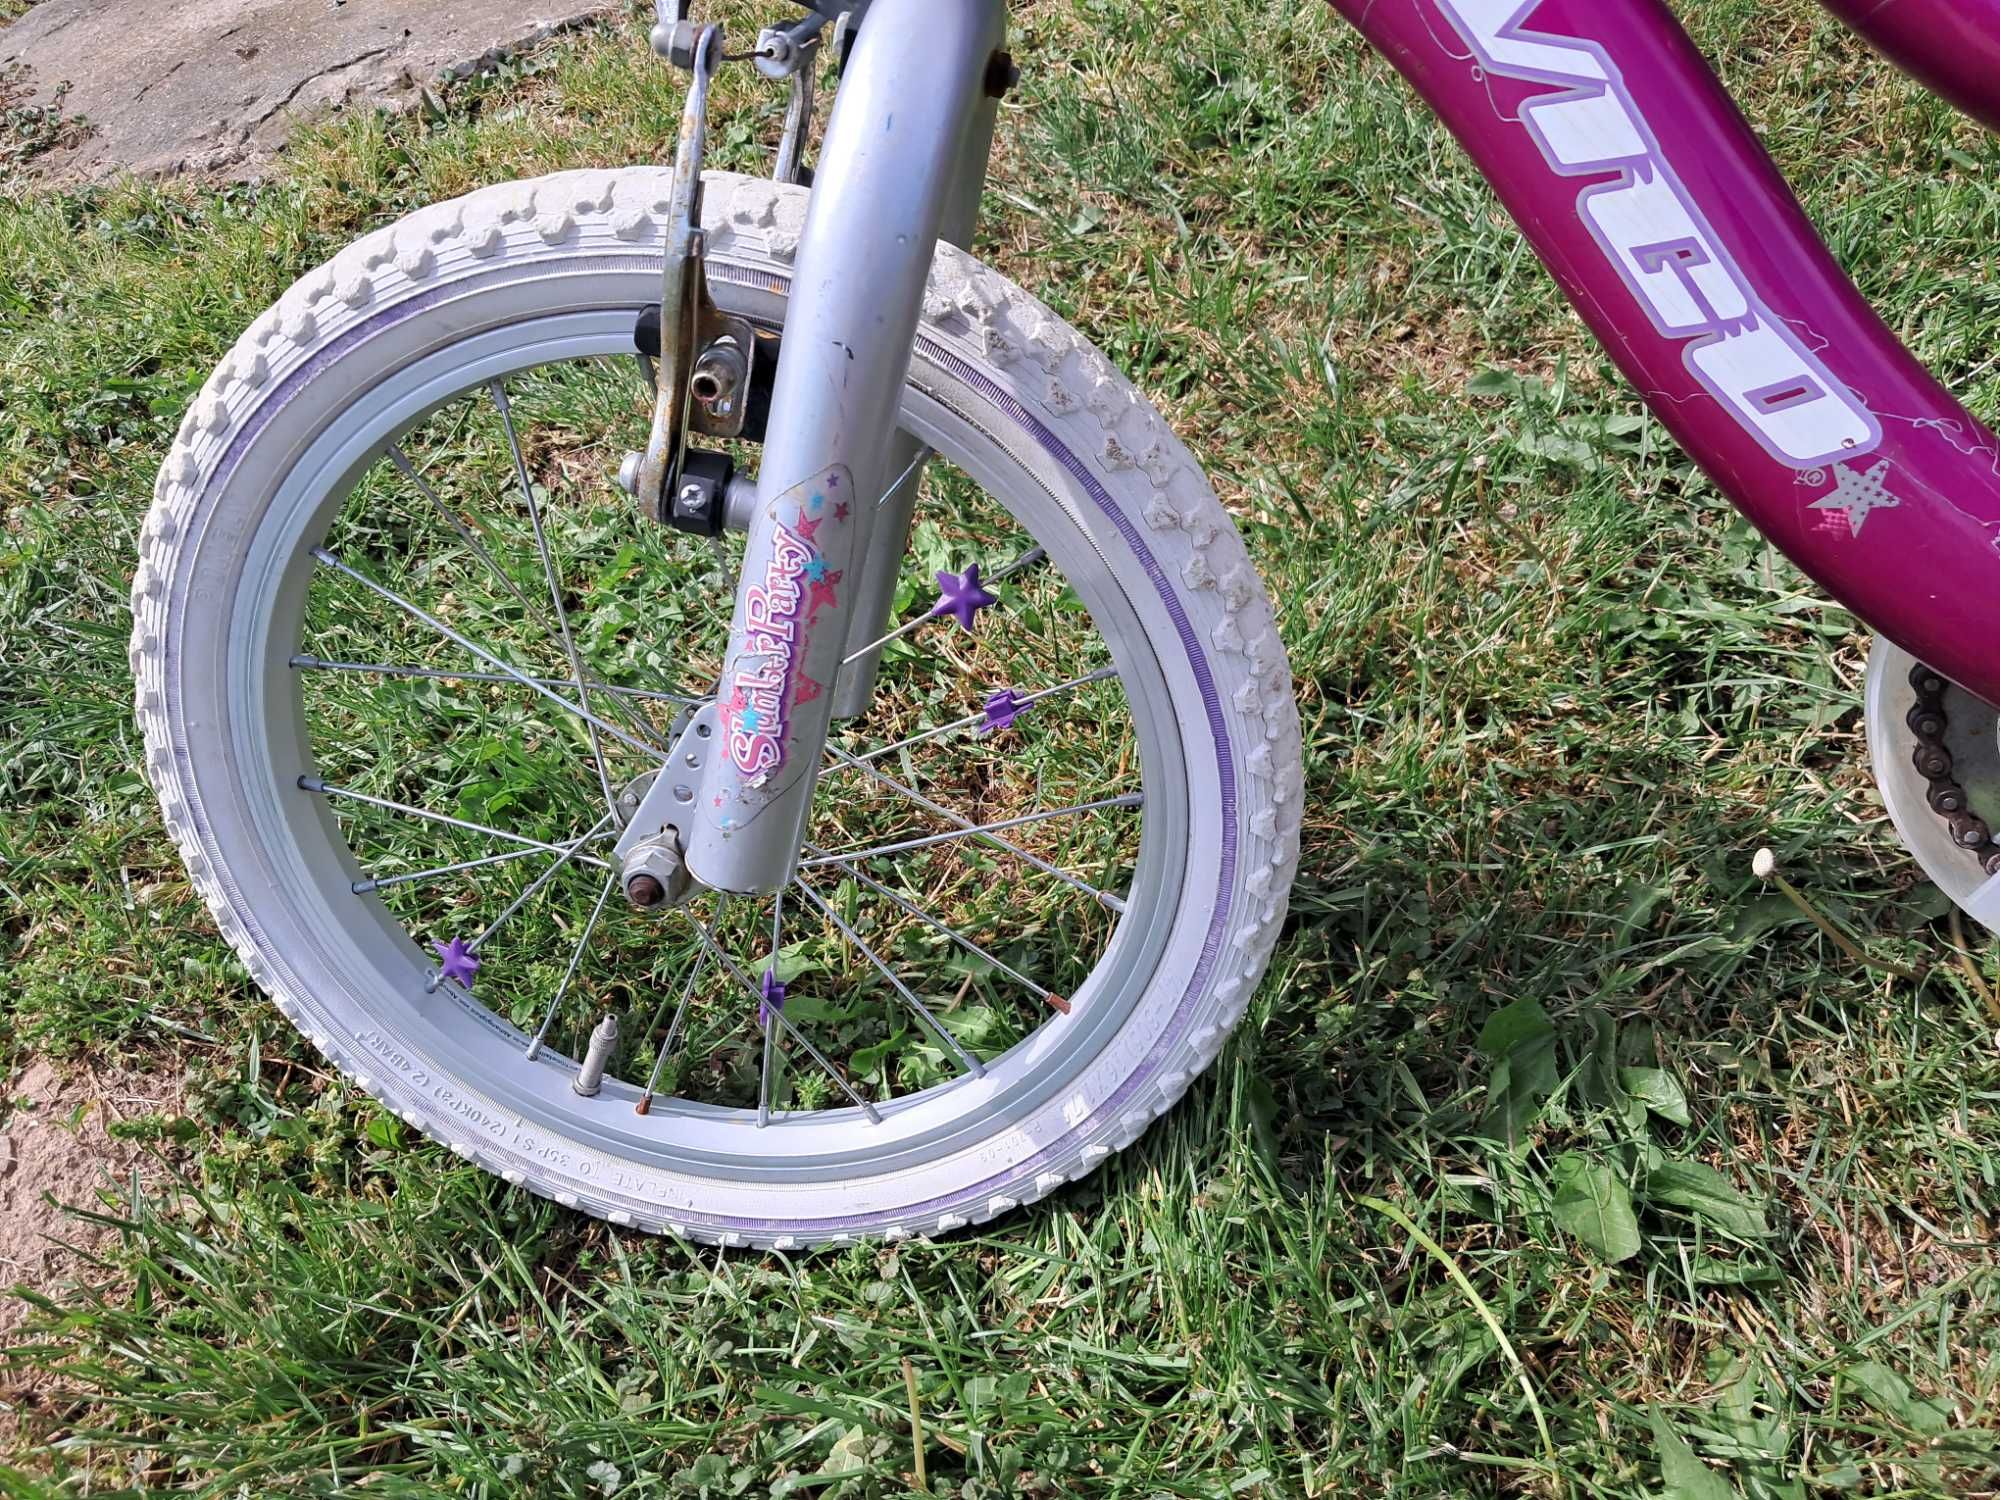 Rózowy rowerek avigo